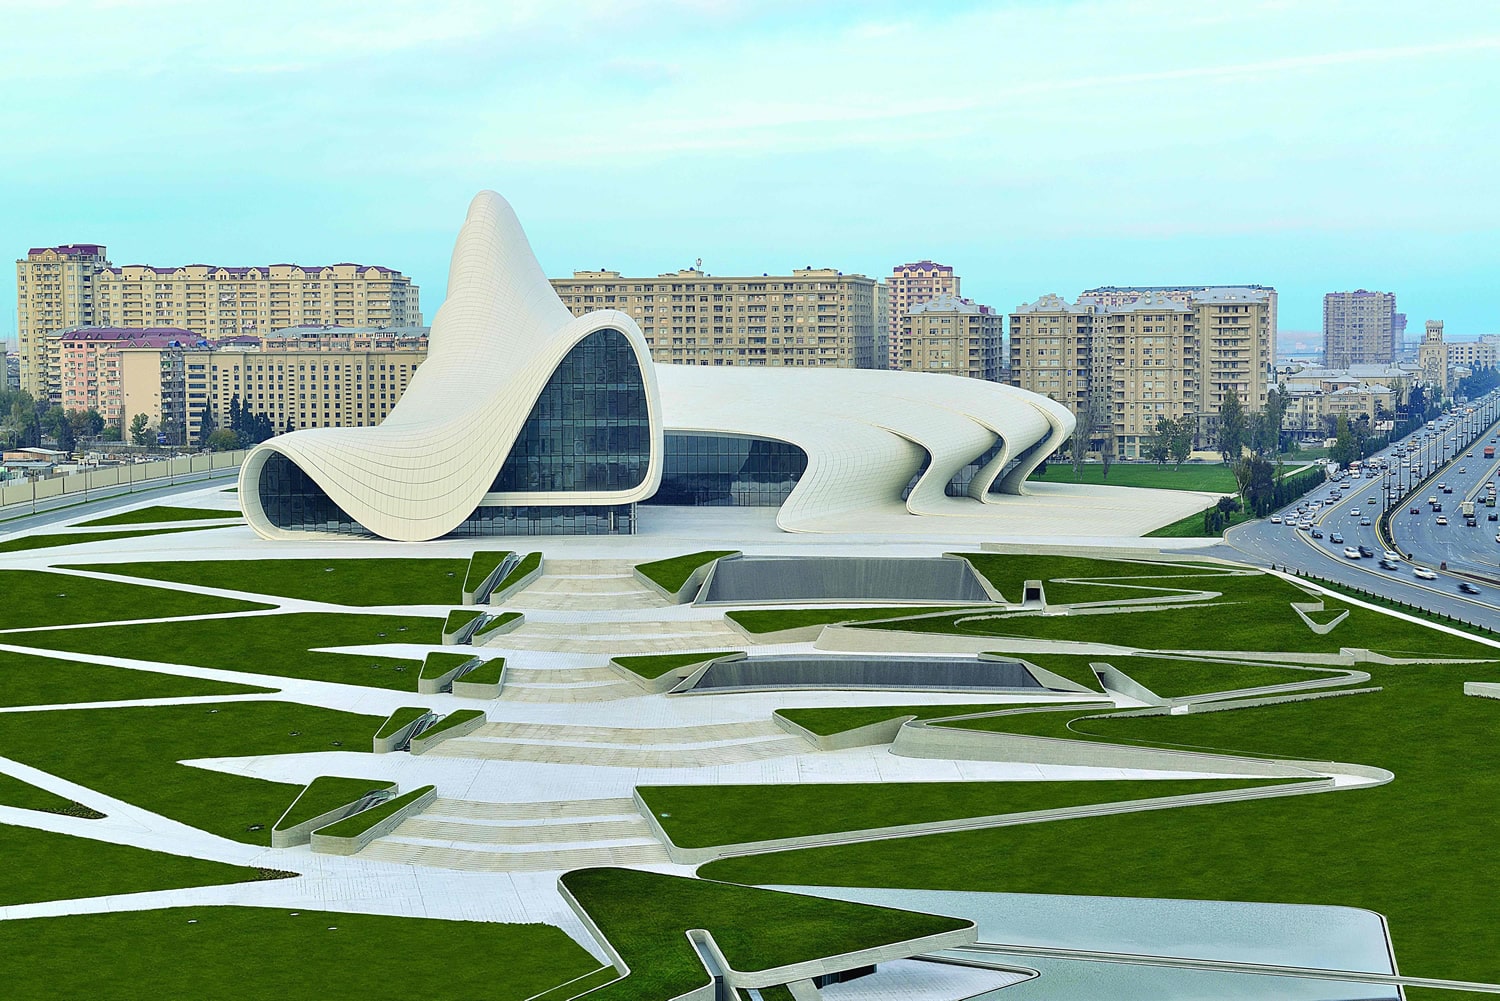 Edificio per l'intrattenimento: foto del Centro Culturale Heydar Aliyev, progetto di Zaha Hadid